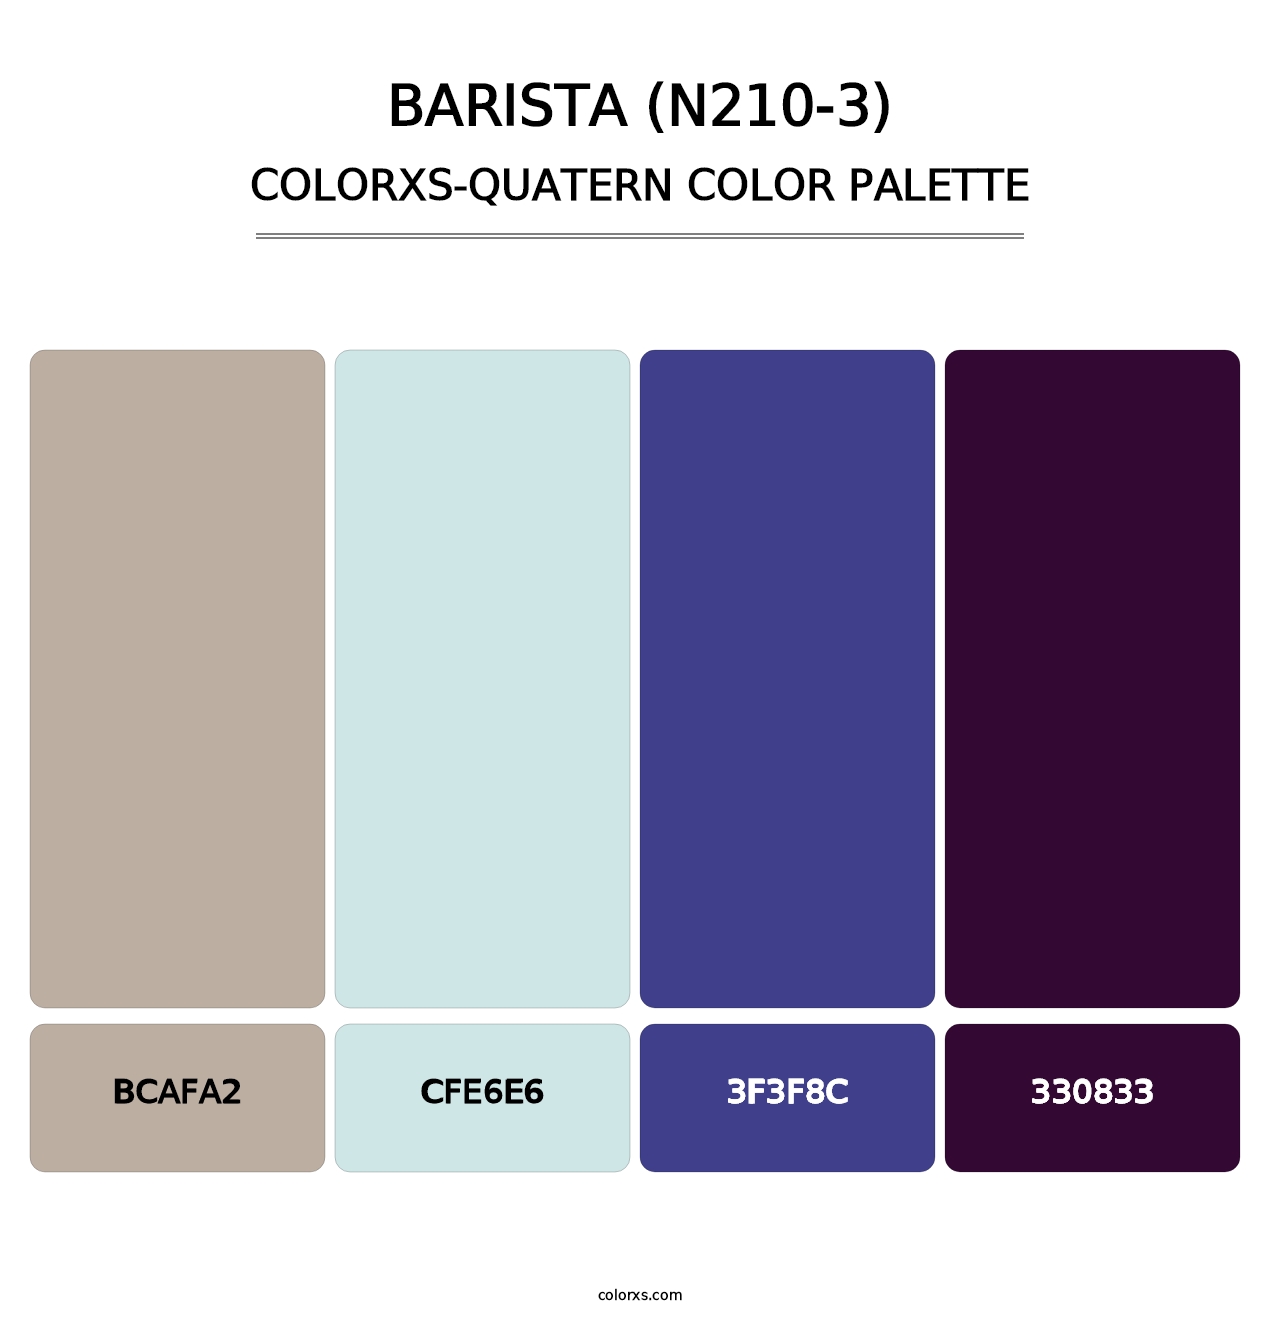 Barista (N210-3) - Colorxs Quatern Palette